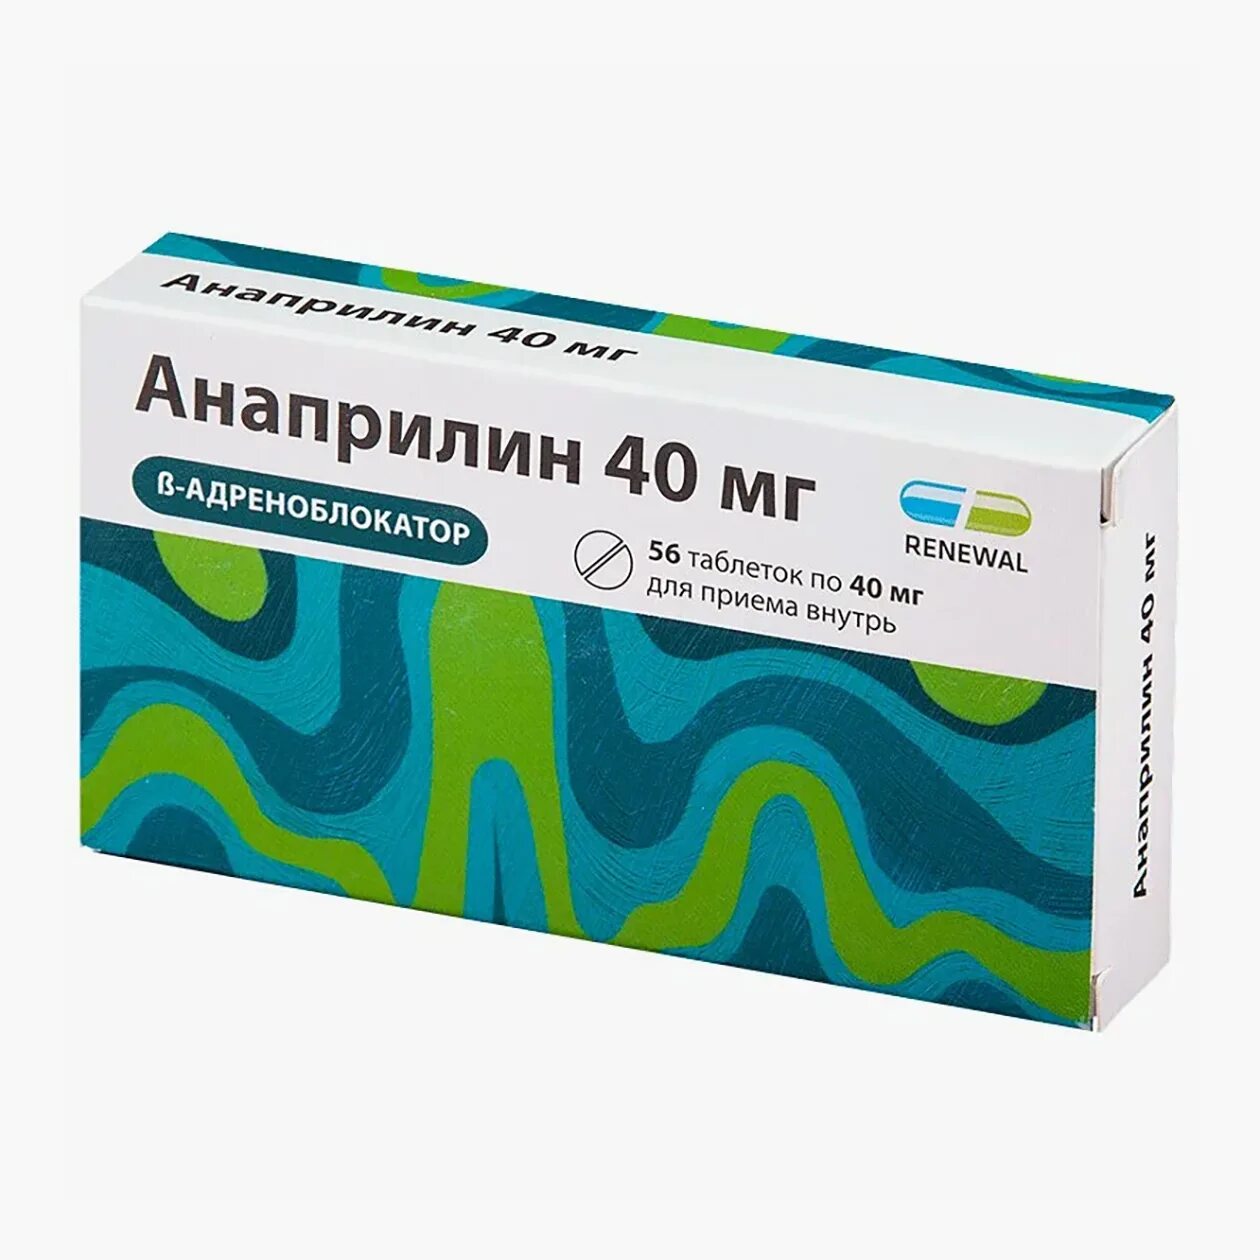 Анаприлин реневал 10 мг. Таблетки анаприлин 40 мг. Анаприлин реневал таб. 10мг №112. Анаприлин 40 реневал.